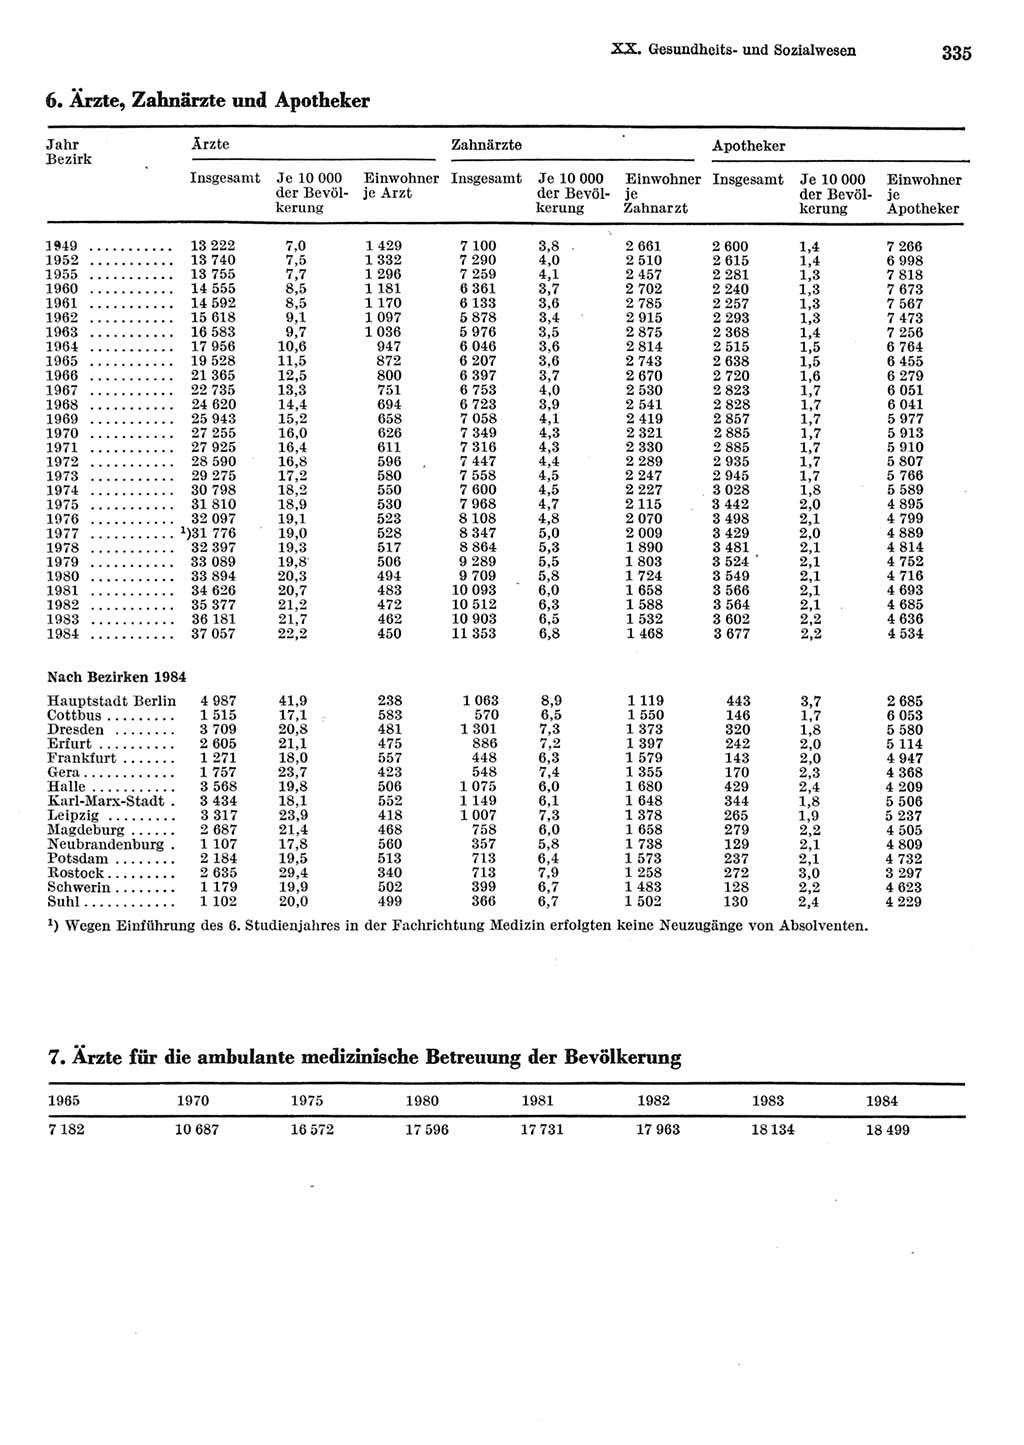 Statistisches Jahrbuch der Deutschen Demokratischen Republik (DDR) 1985, Seite 335 (Stat. Jb. DDR 1985, S. 335)